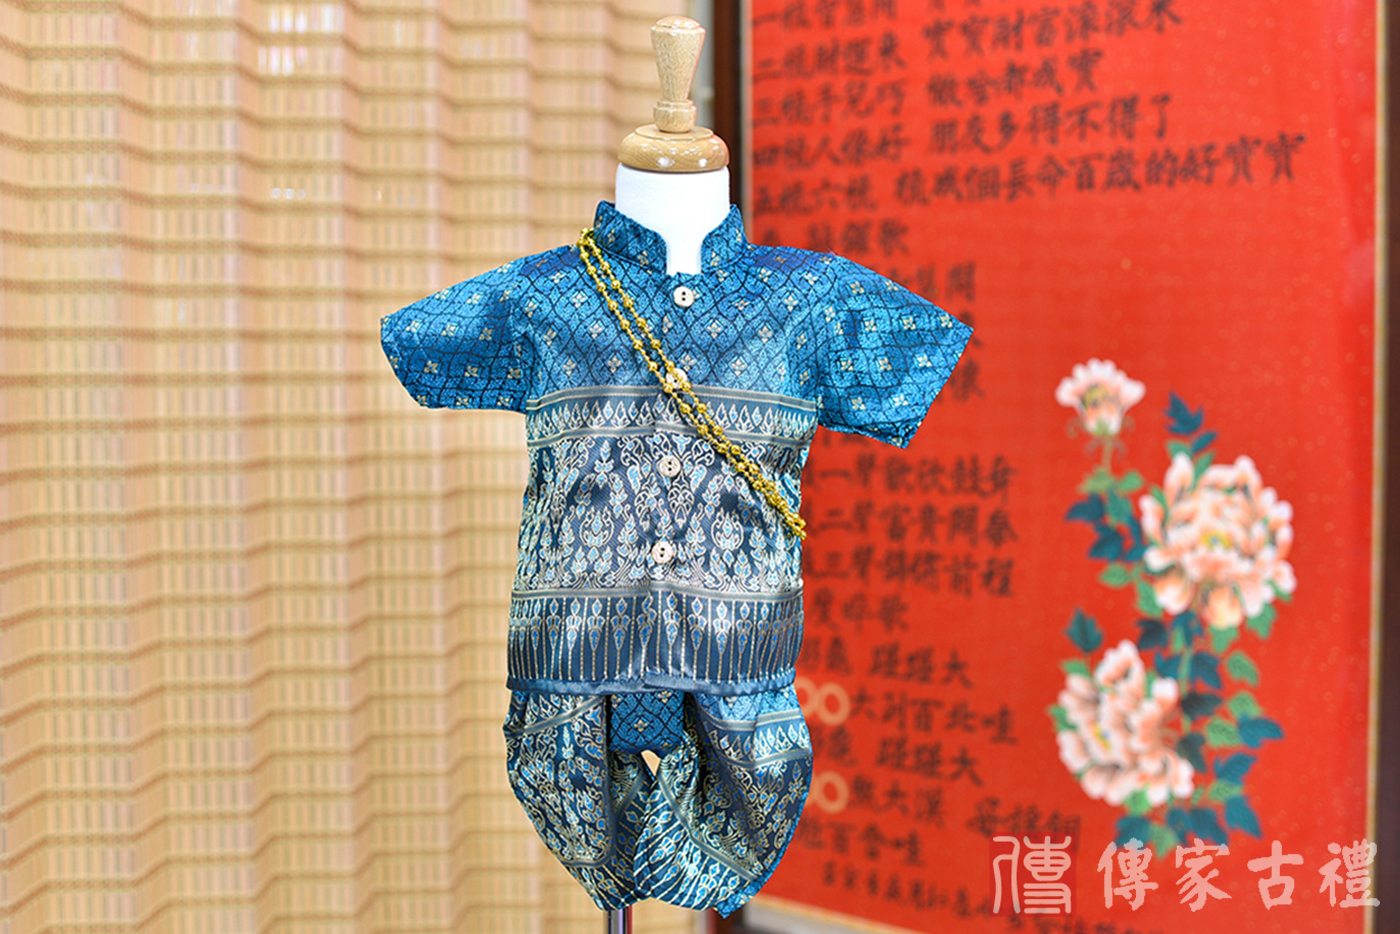 2024-02-25小孩皇室泰服古裝禮服。蔚藍色織花圖案的上衣搭配深藍色花紋泰絲褲裝的泰式古裝禮服。照片集